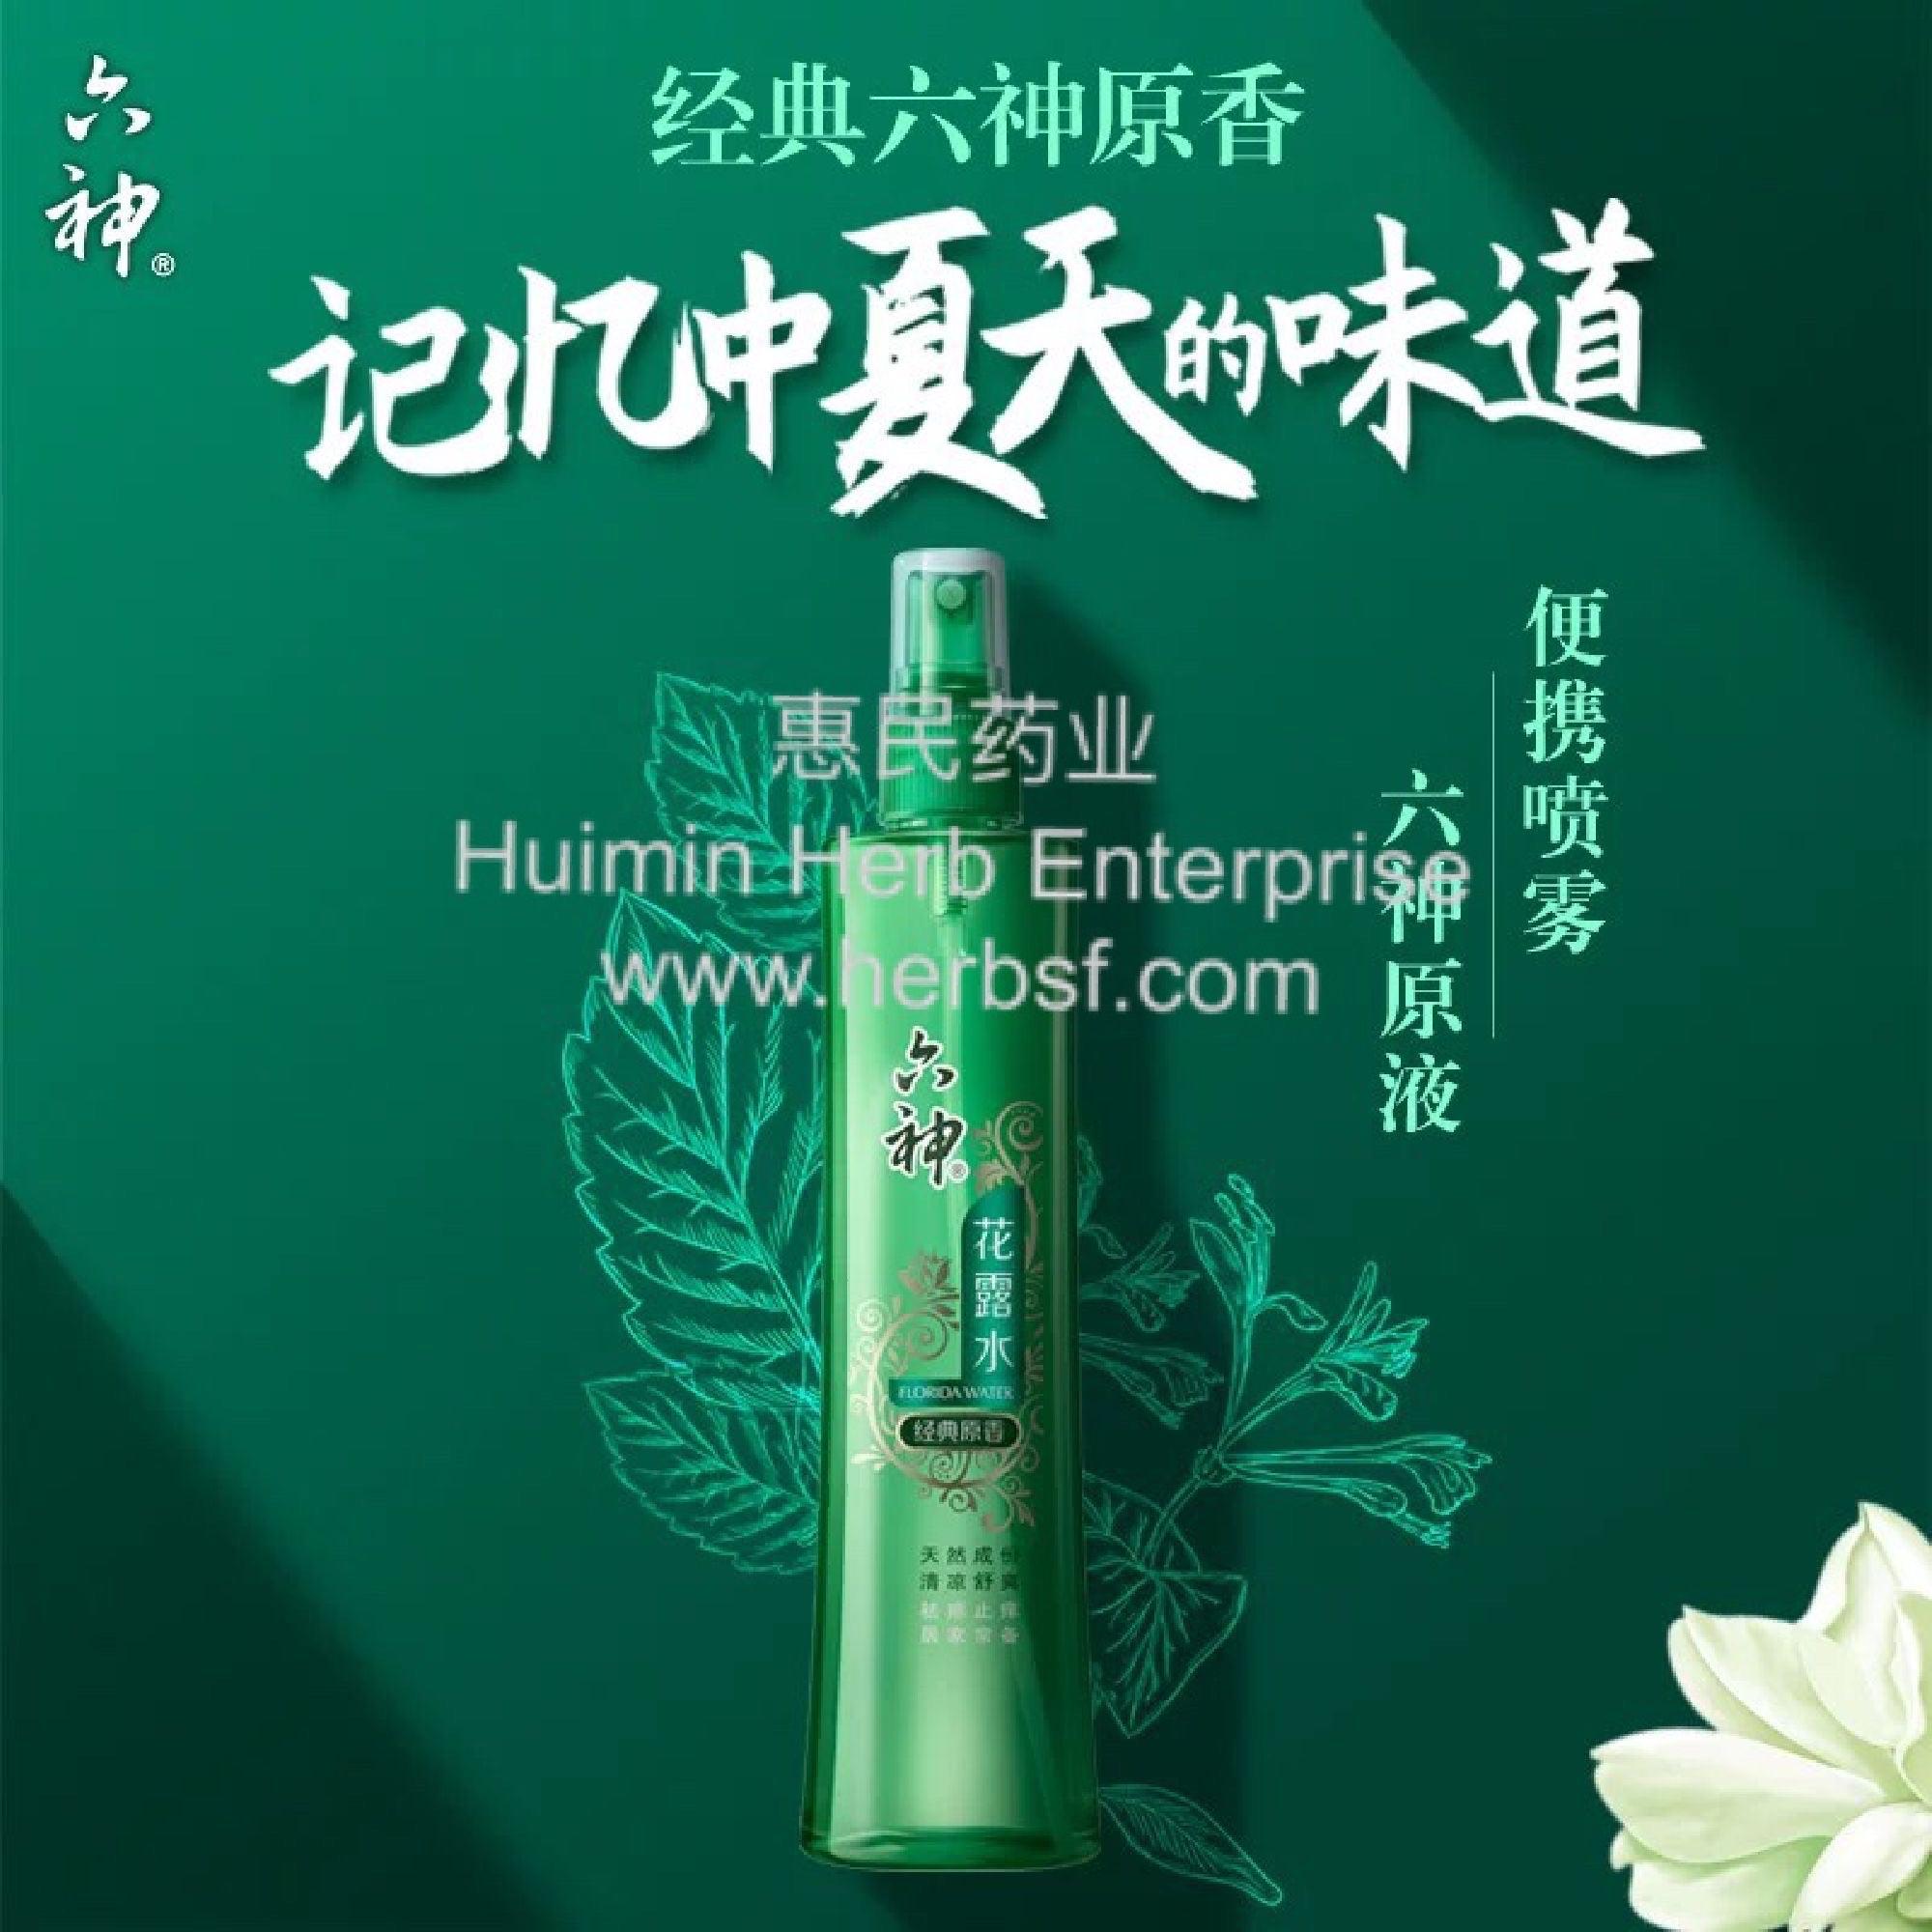 Liu Shen Hua Lu Shui - Huimin Herb Online, LLC